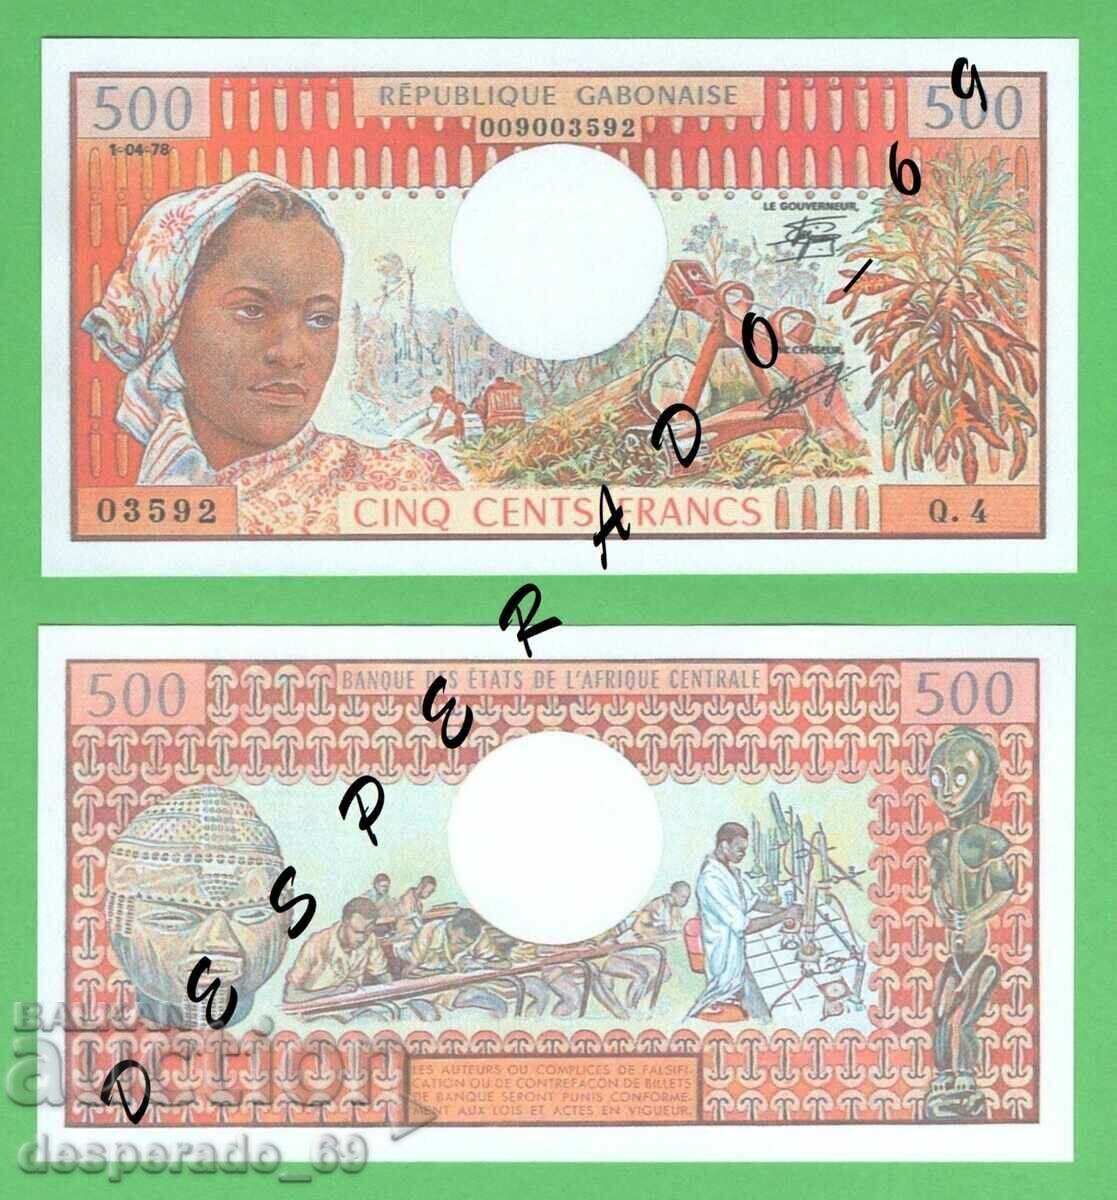 (¯`'•.¸(reproducere) GABON 500 franci 1978 UNC¸.•'´¯)